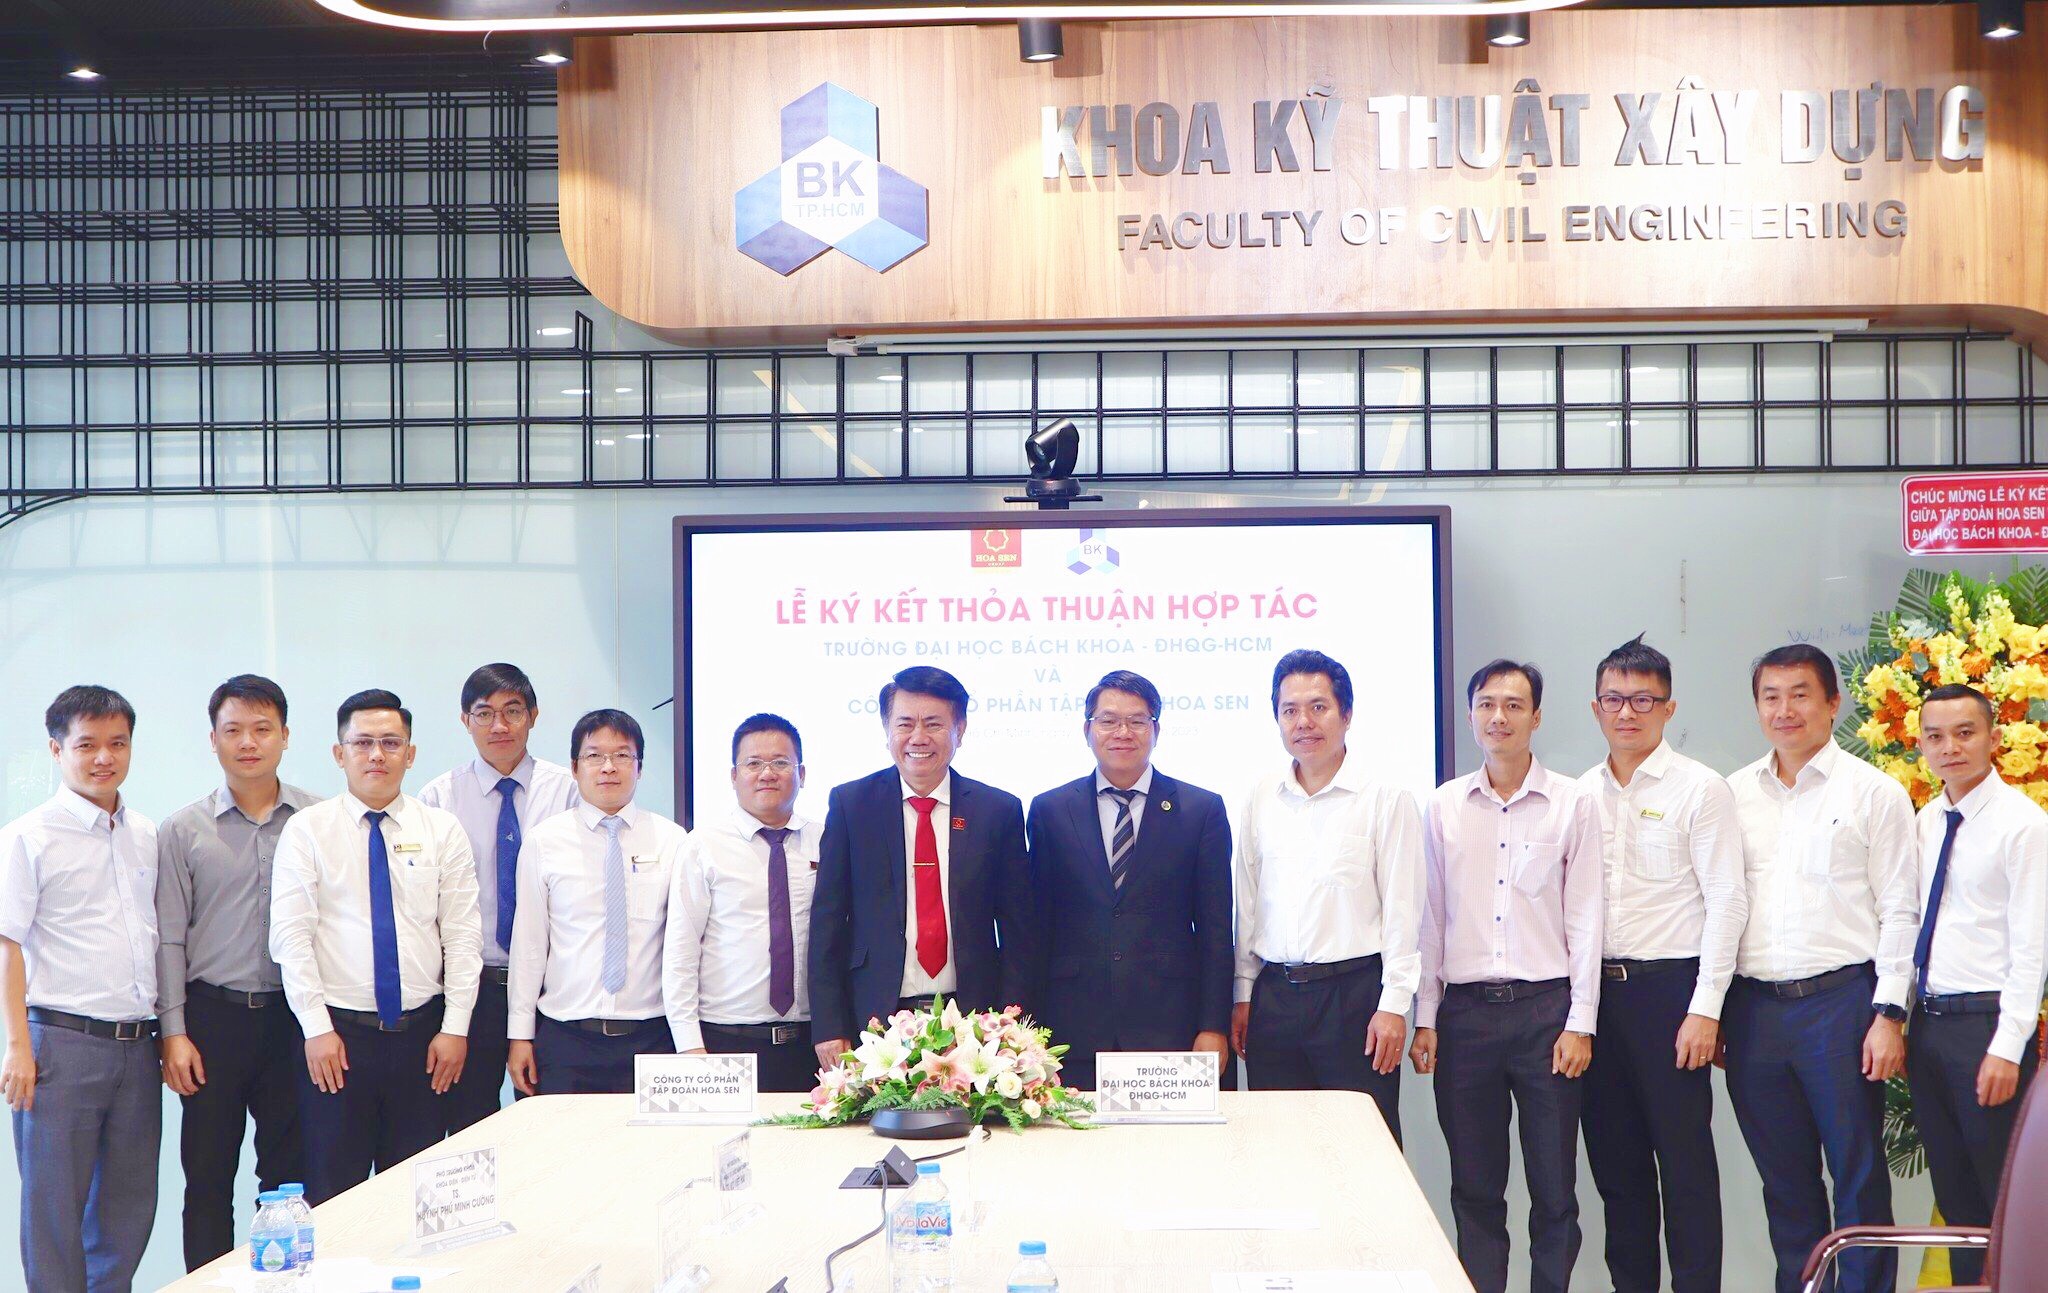 Tập đoàn Hoa Sen ký kết thỏa thuận hợp tác với Trường Đại học Bách Khoa, ĐHQG - HCM 2